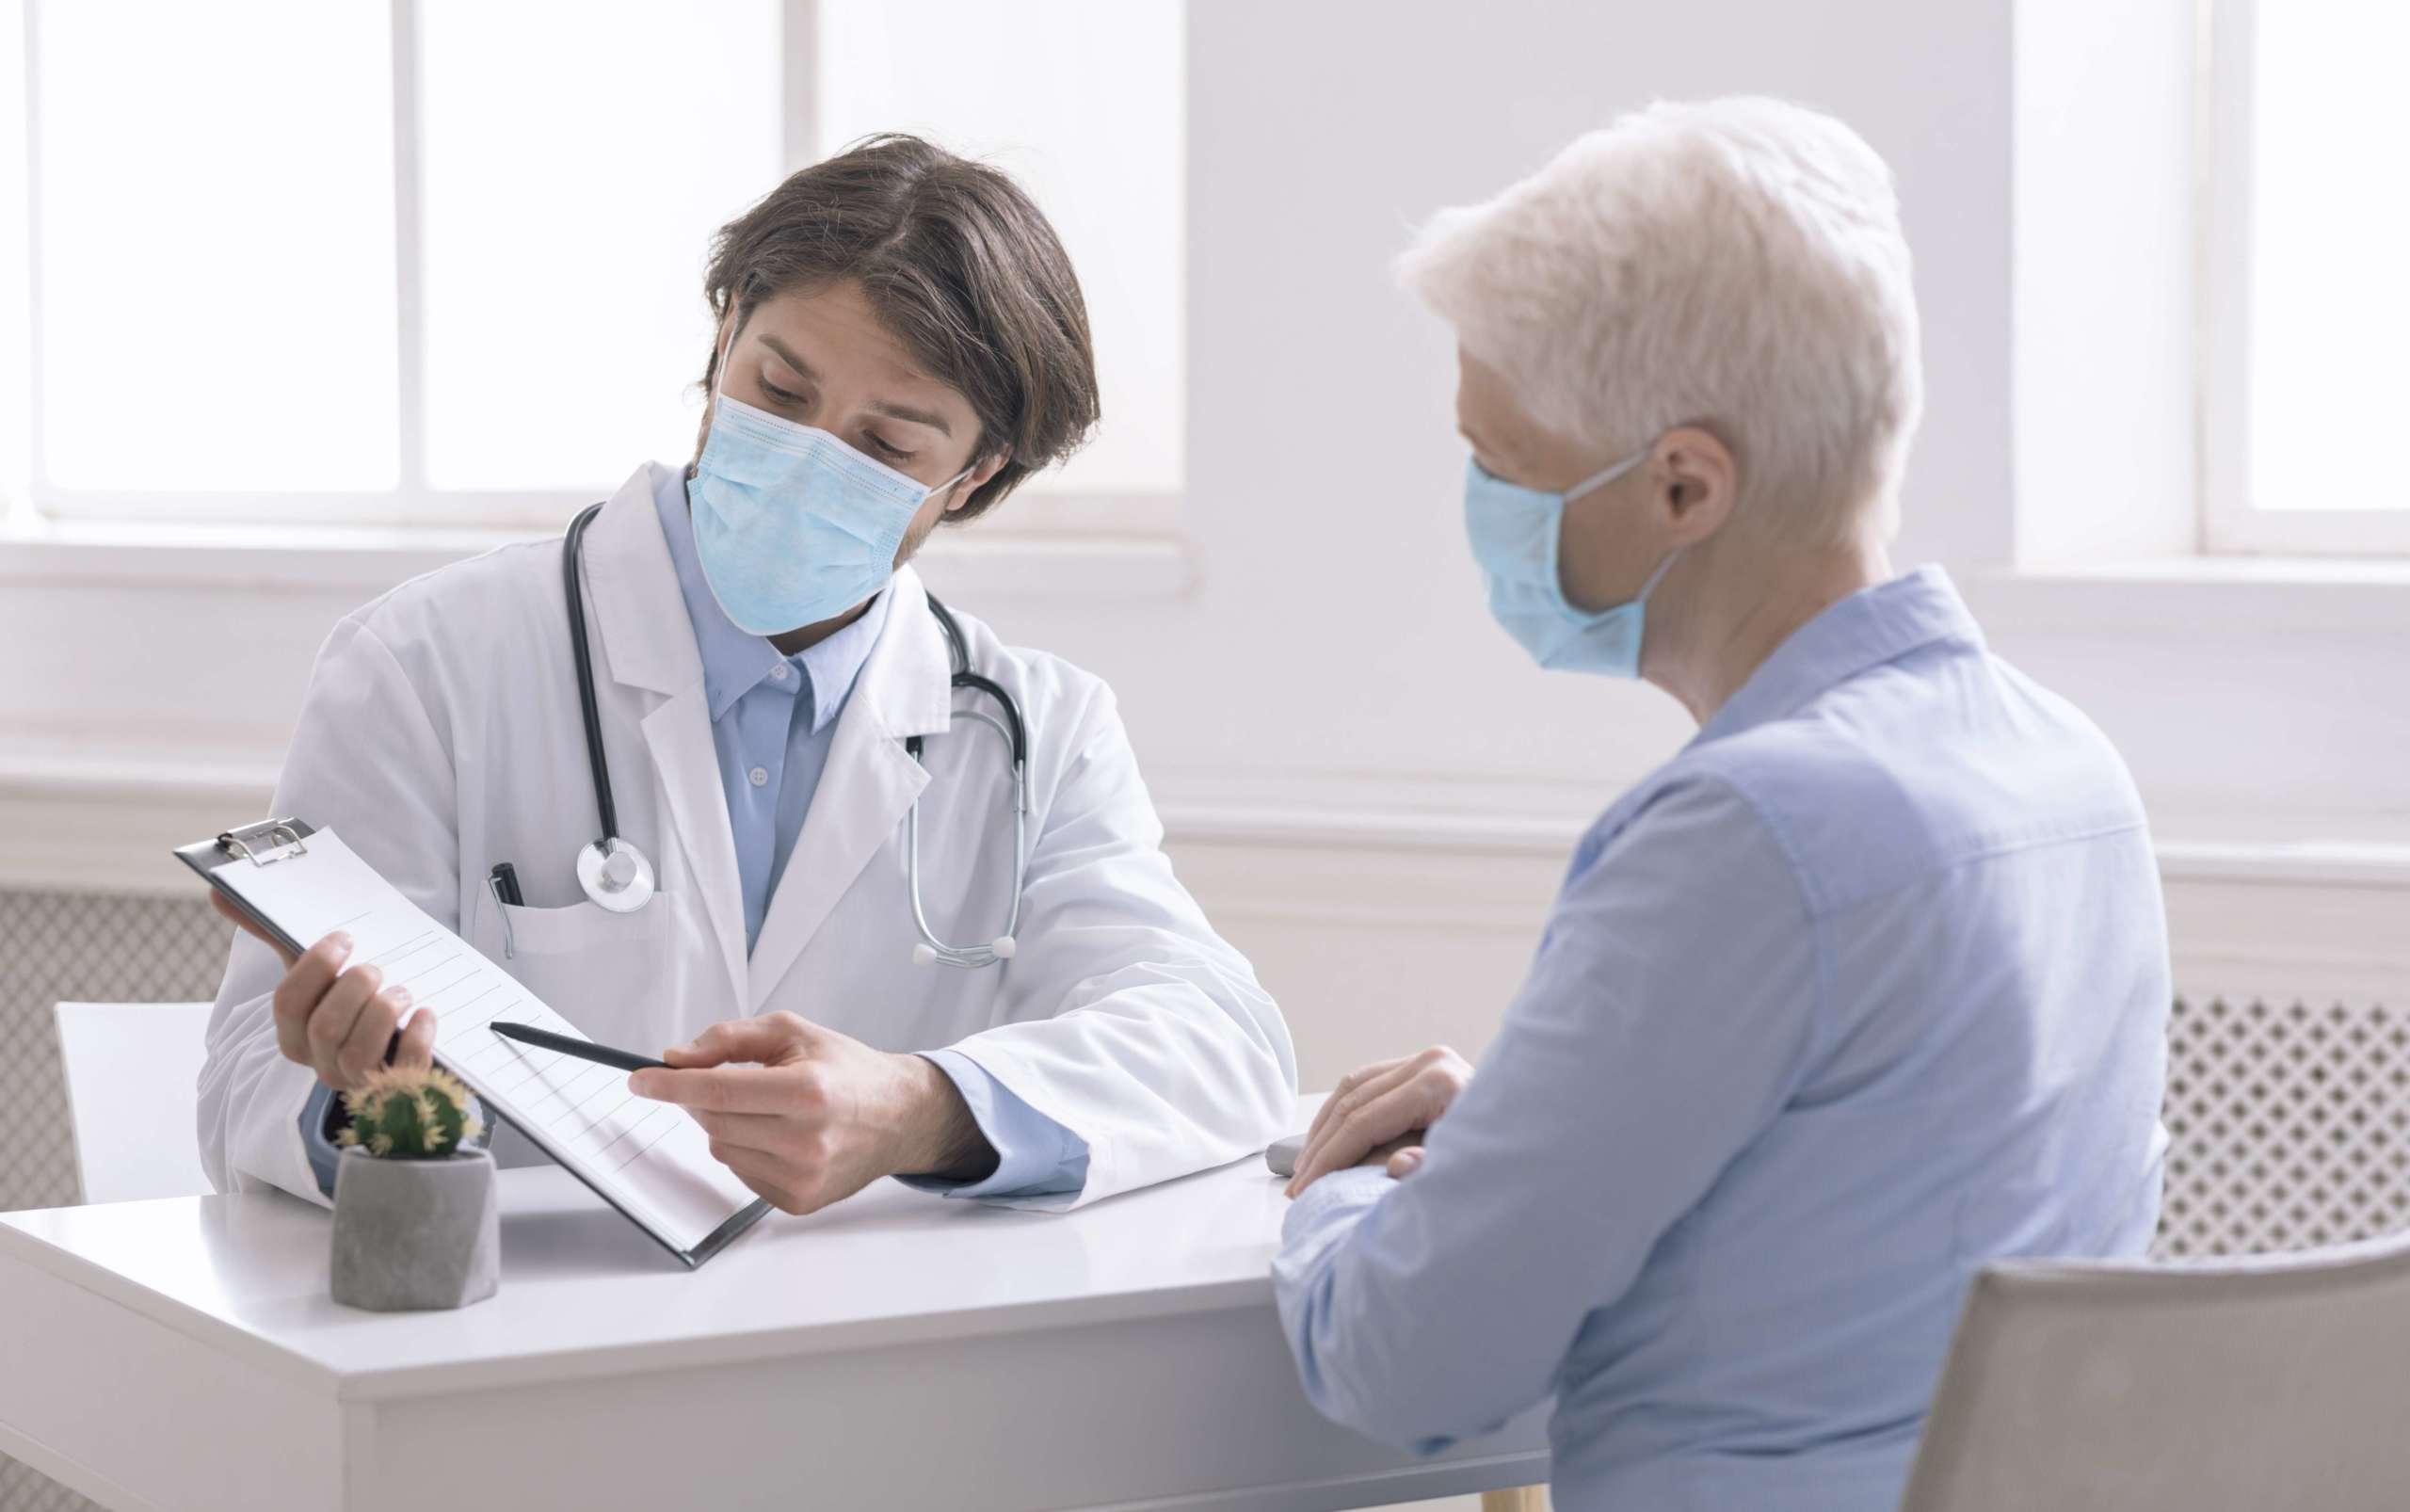 Hausarzt zeigt der älteren Frau Analyseergebnisse während eines präventiven Besuchs